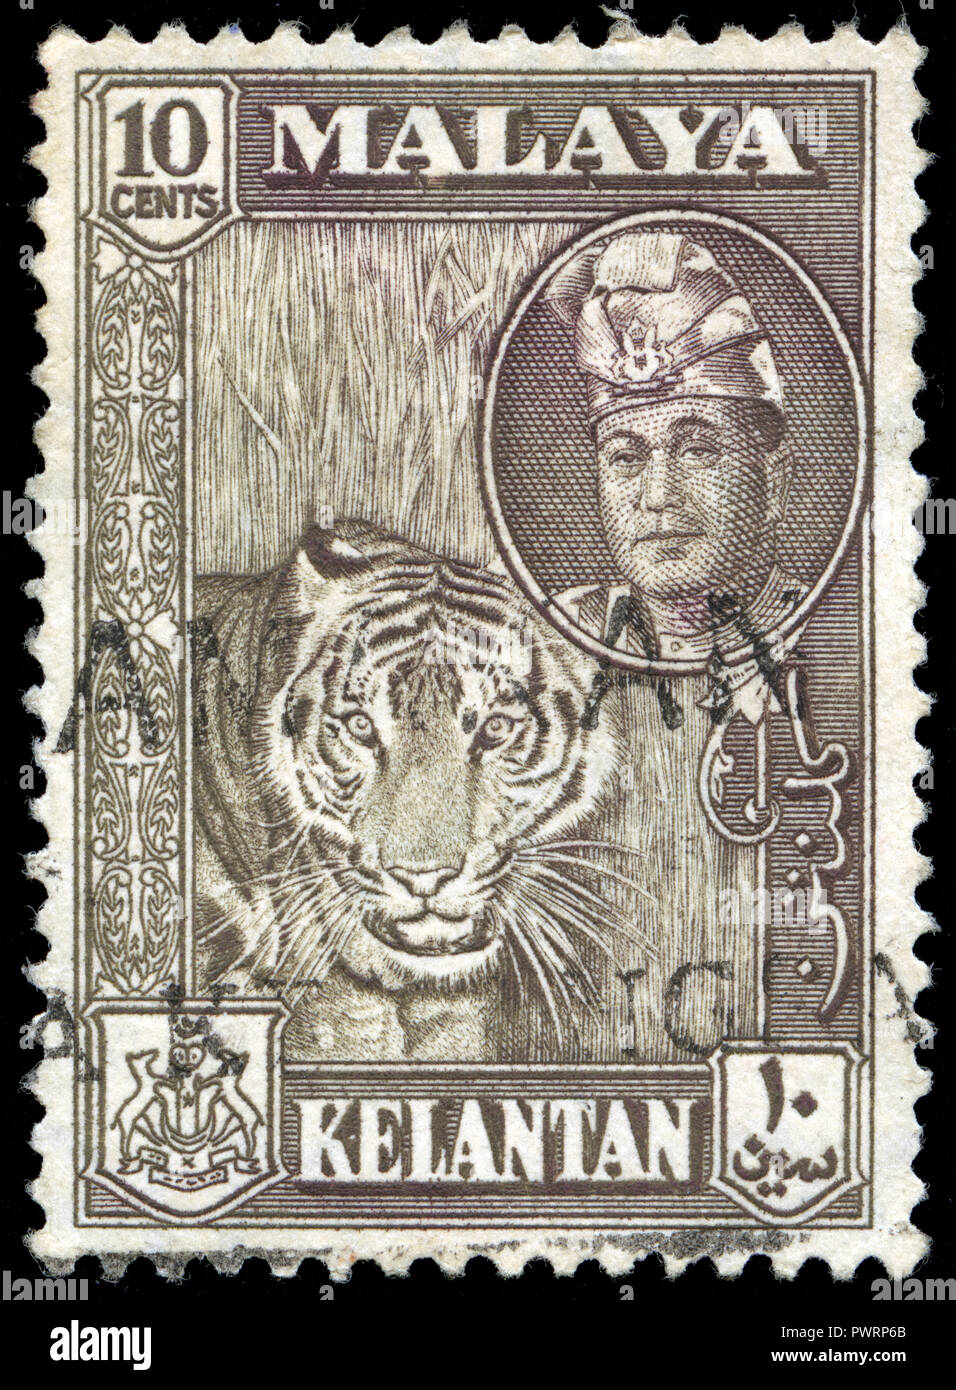 Timbre cachet de l'administration fédérale dans l'États malais de Kelantan série émise en 1961 Banque D'Images